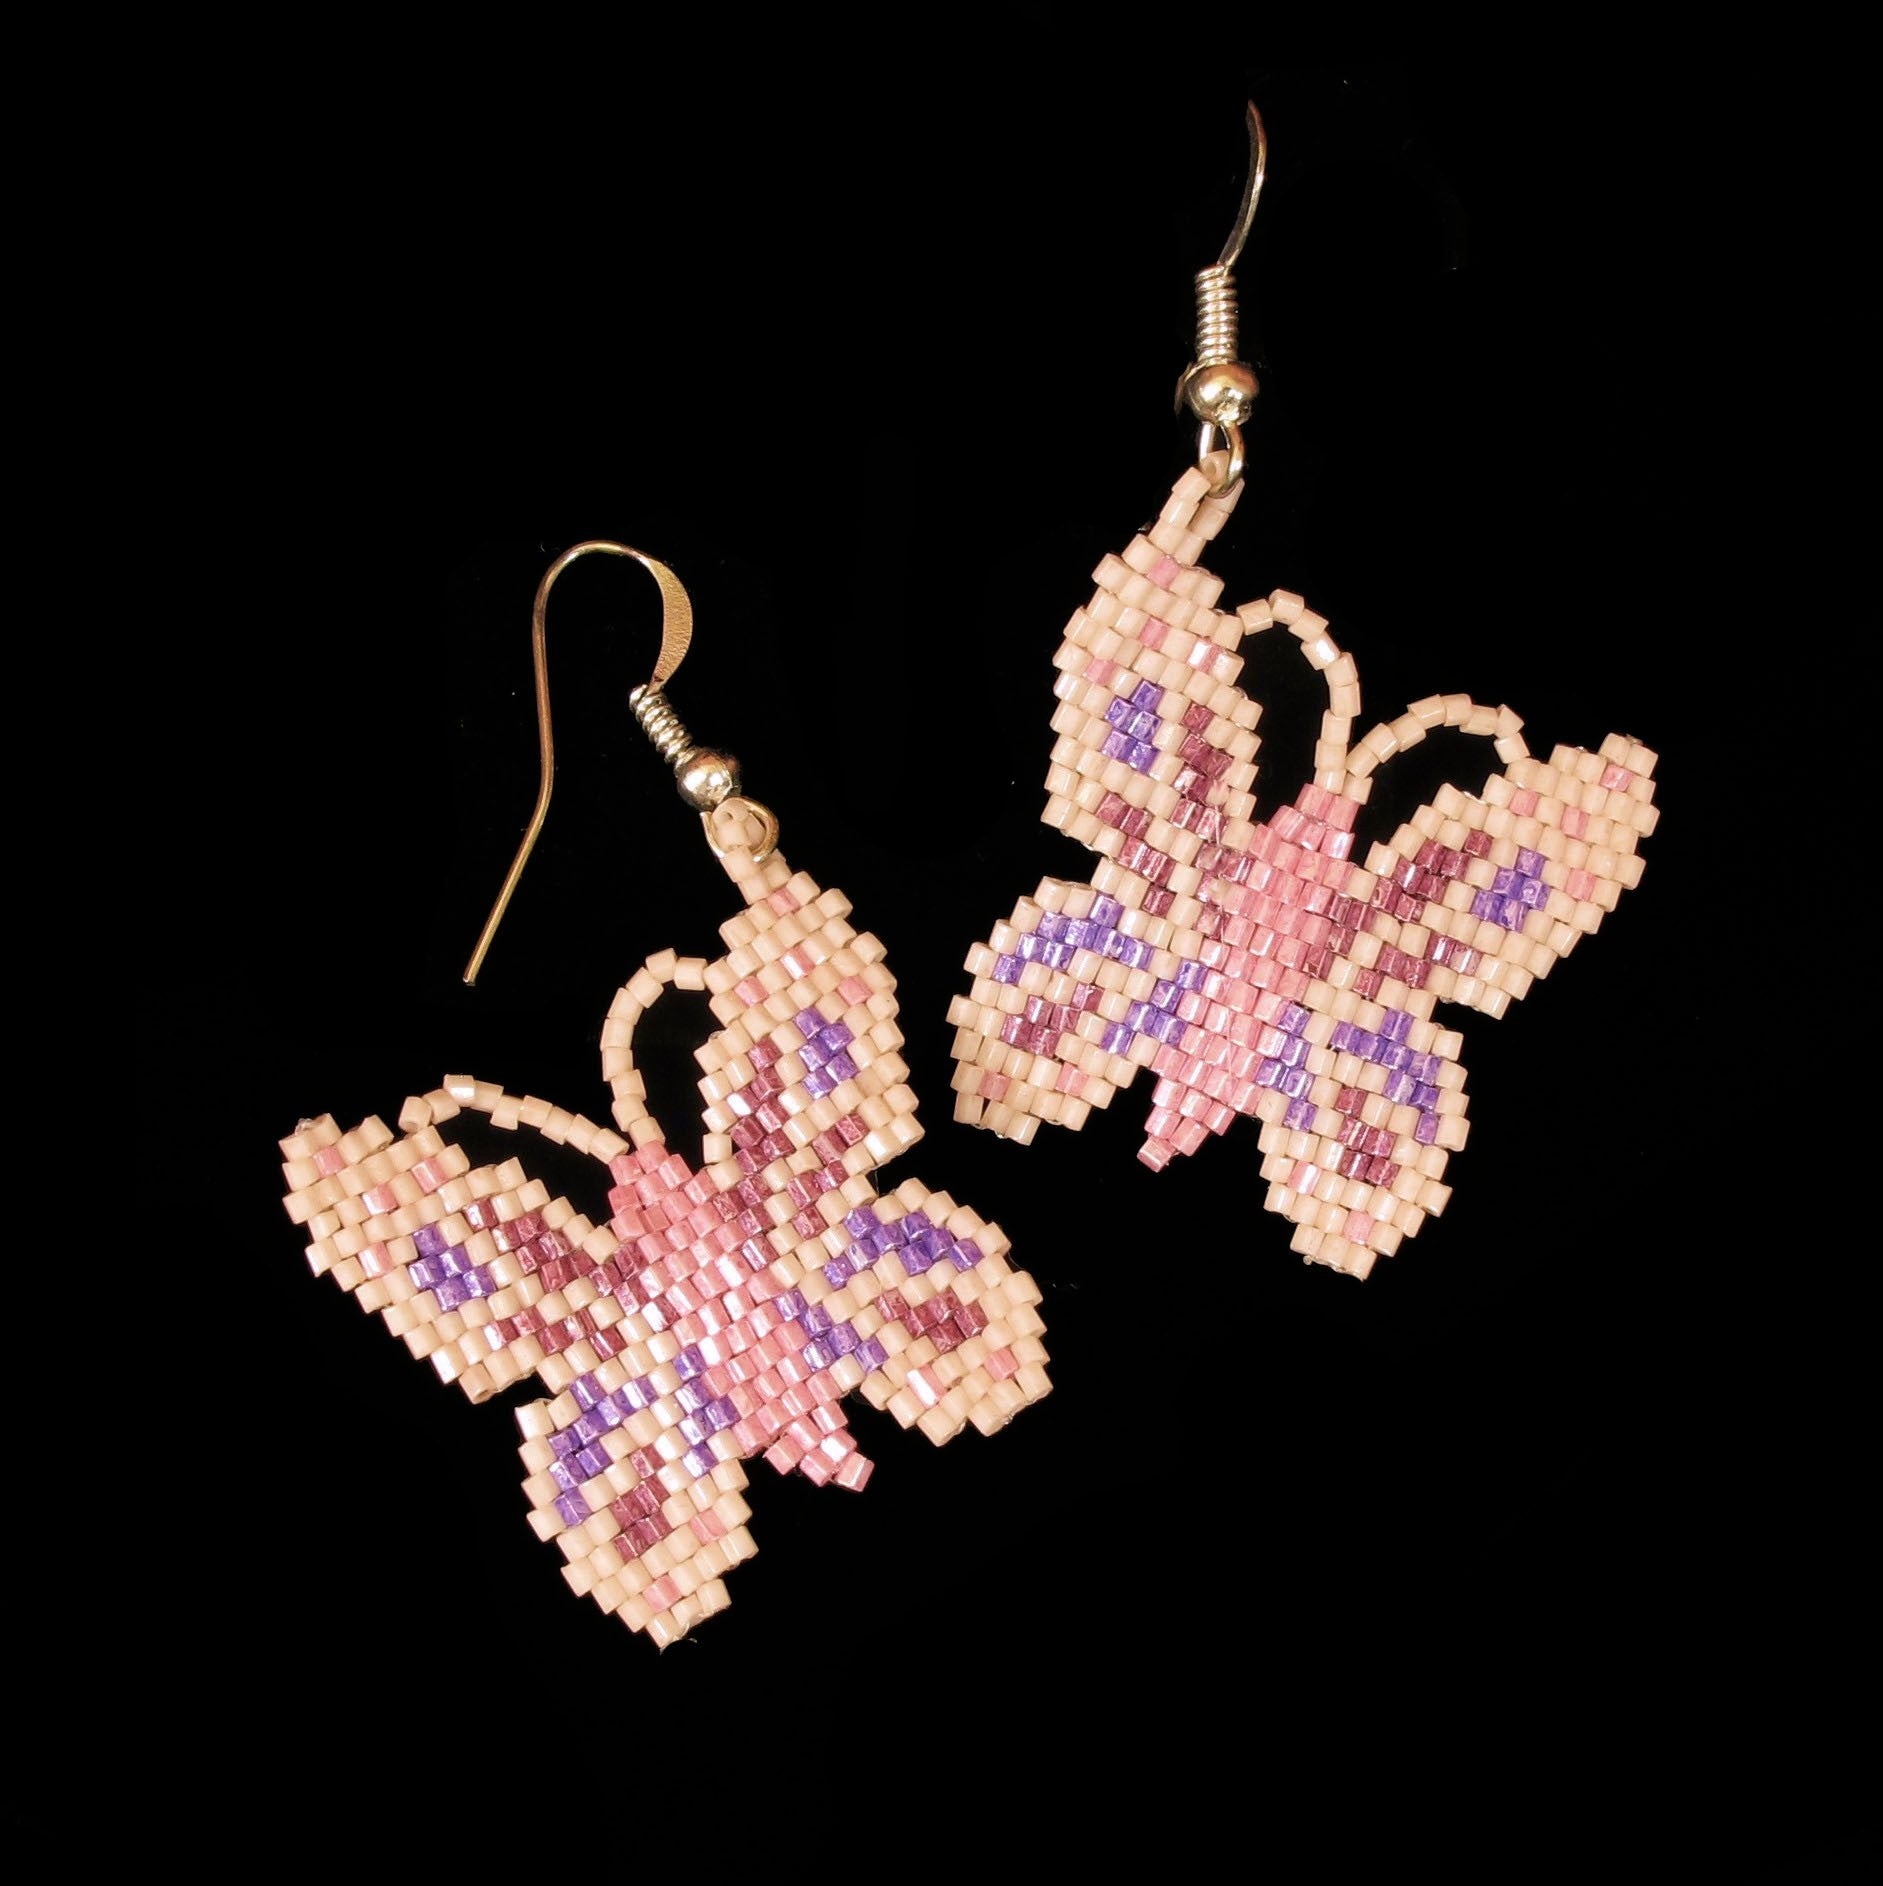 Japanese jewelry brand Lattice earrings/piercing pink butterfly